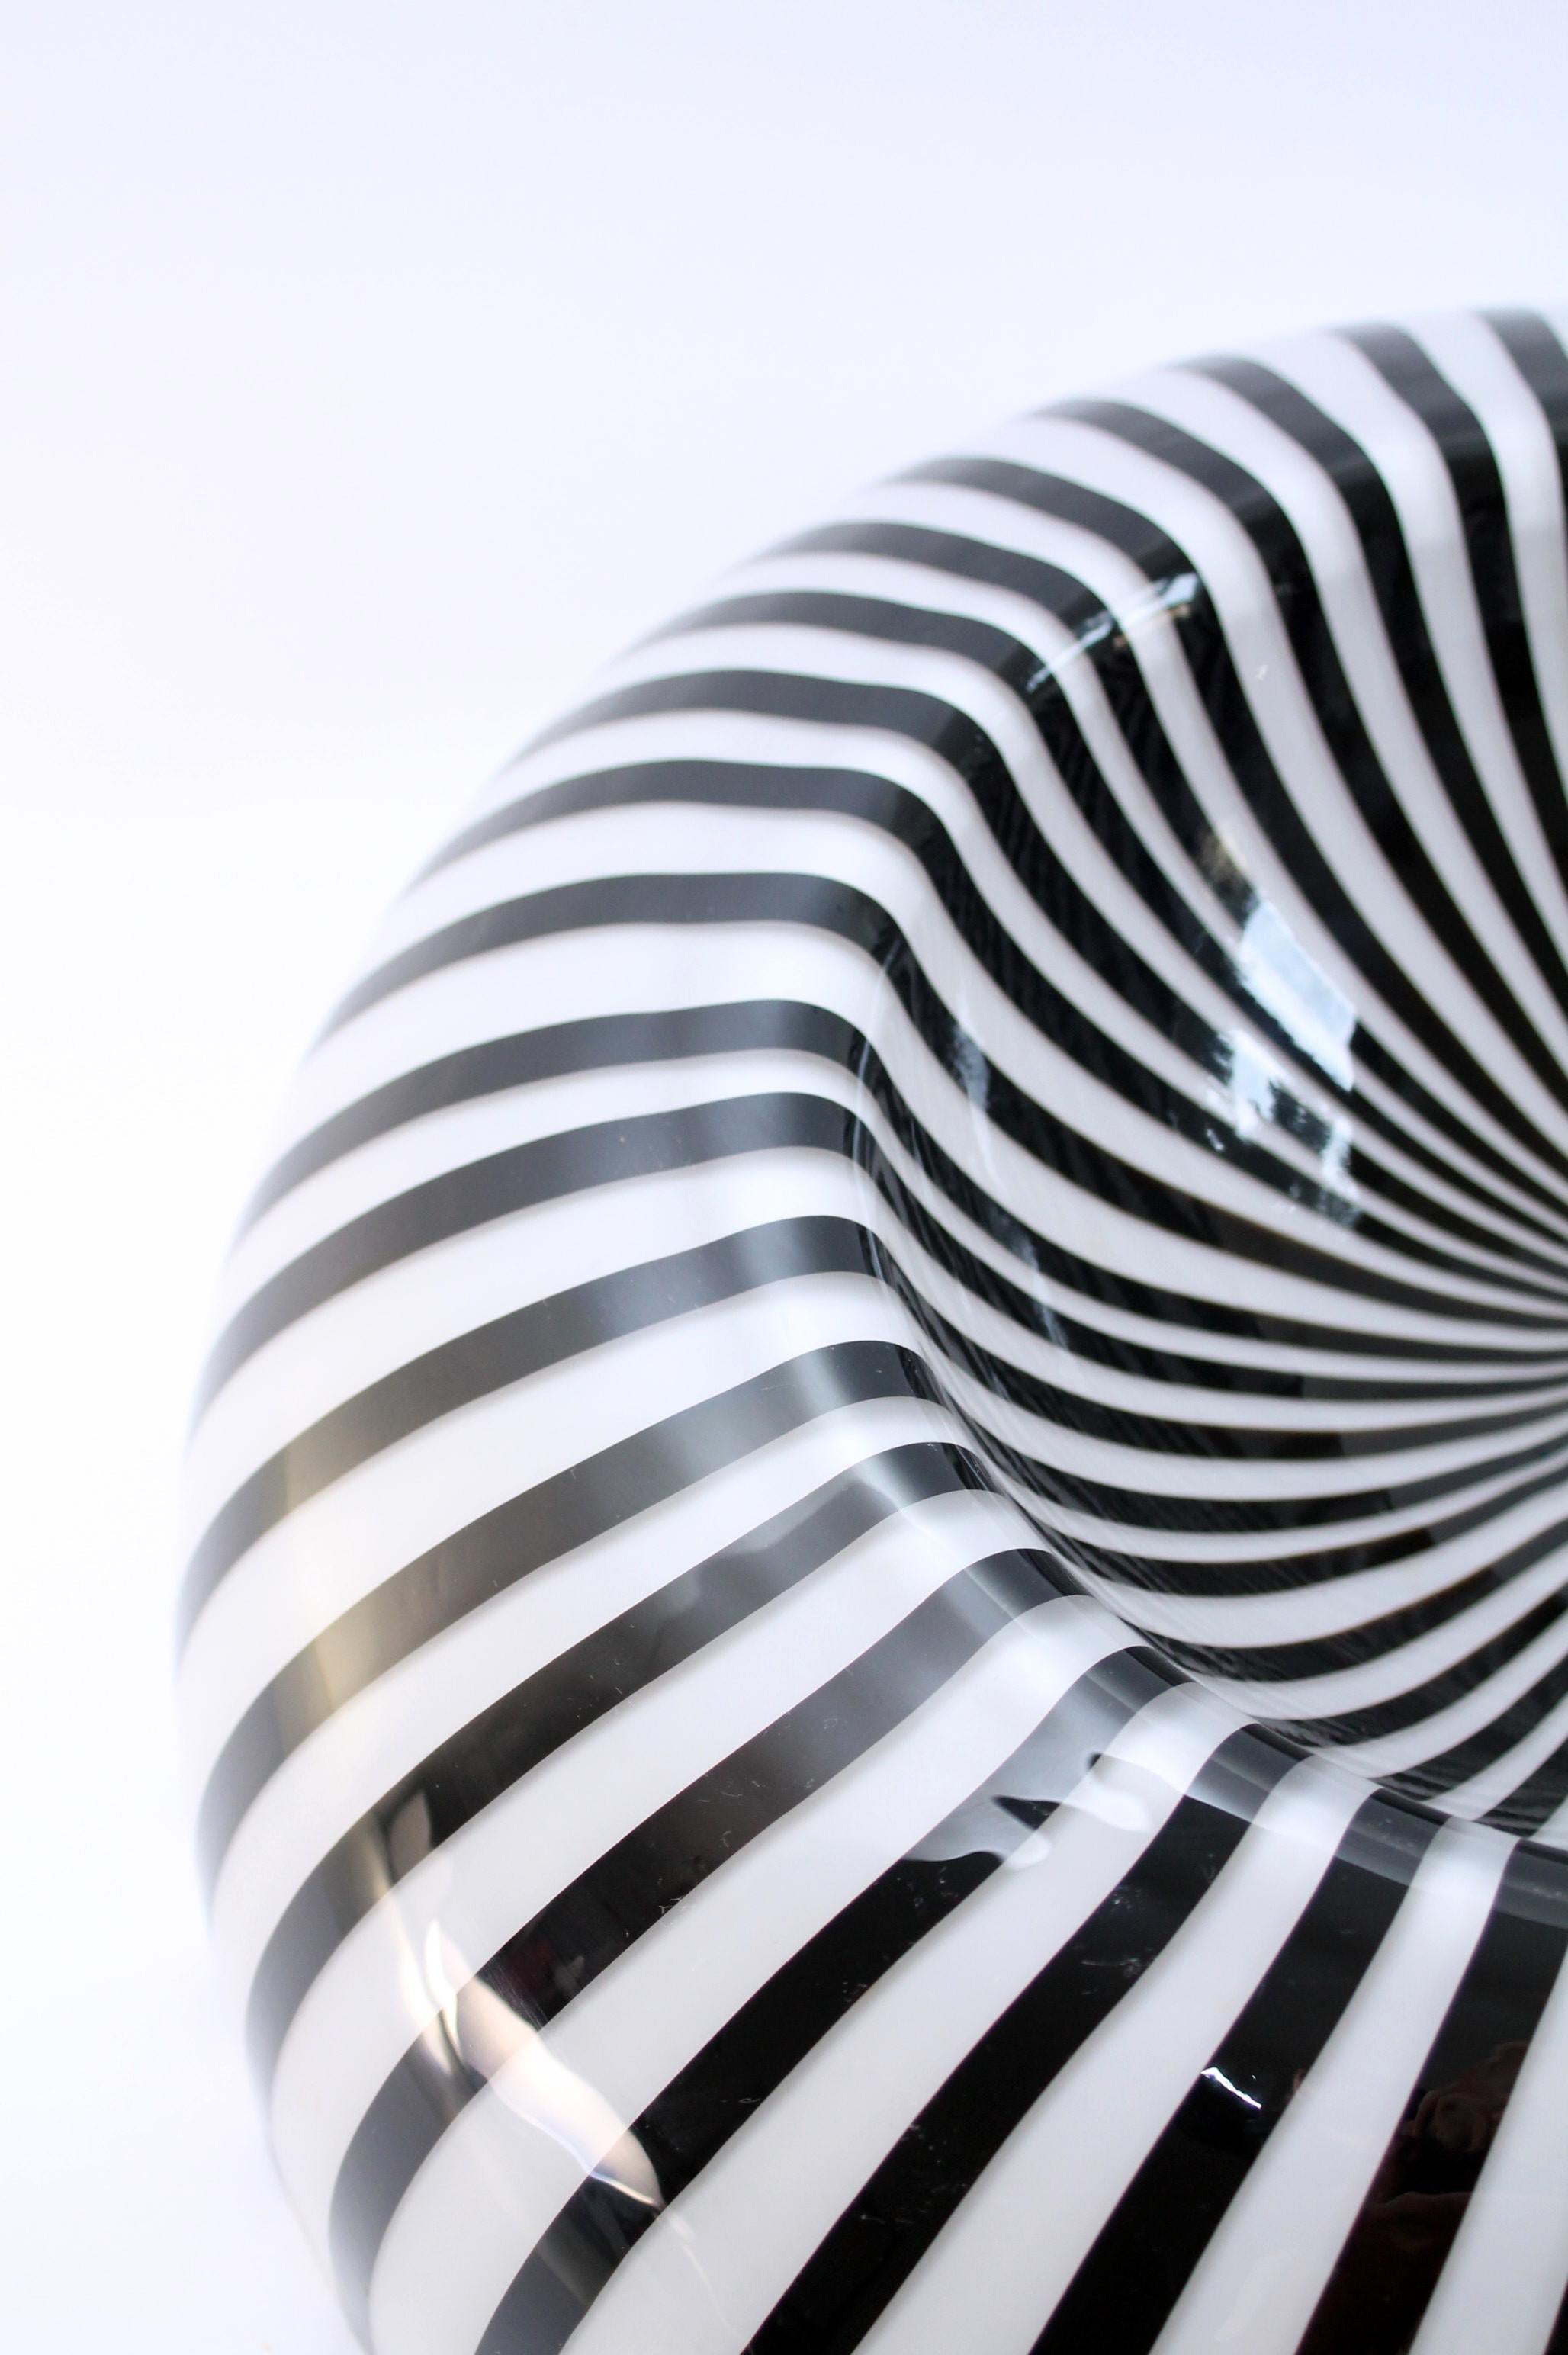 Tafelaufsatz aus Murano-Glas von Lino Tagliapietra aus den 1970er Jahren. Ein echter Blickfang!
Eine schwarz/weiße opalartige Kreation - Sculpture Centerpiece

Mundgeblasenes Murano-Glaskunstwerk, modernistisch, bekannte Glasstreifen